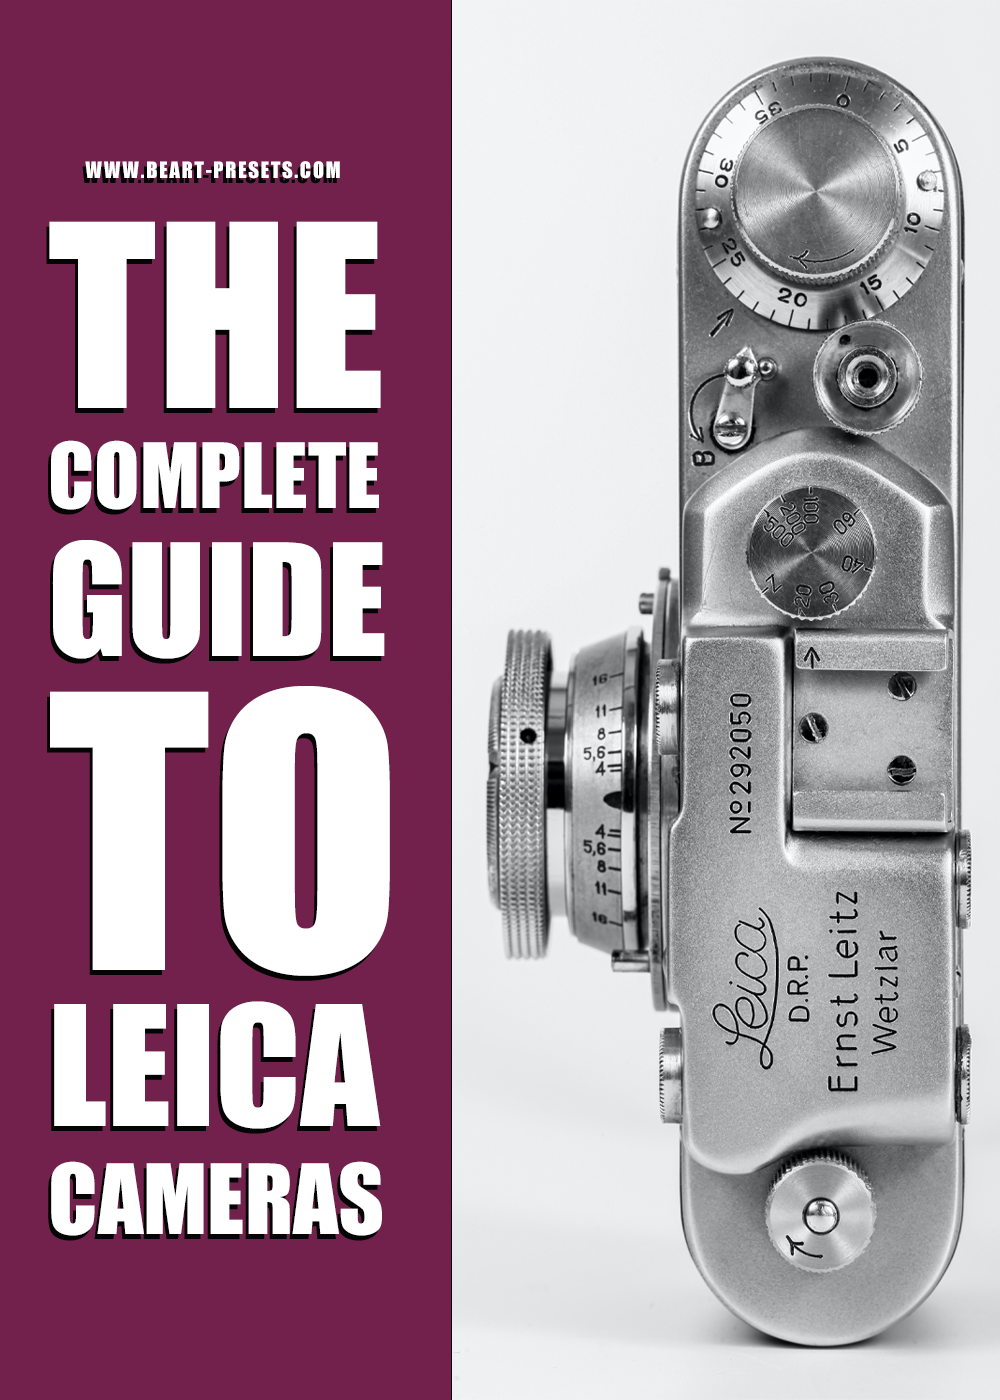 https://images.squarespace-cdn.com/content/v1/54643542e4b0097b957d6418/7c0e7415-1adf-4257-9175-ee1ba2aab12a/The+Complete+Guide+To+Leica+Cameras